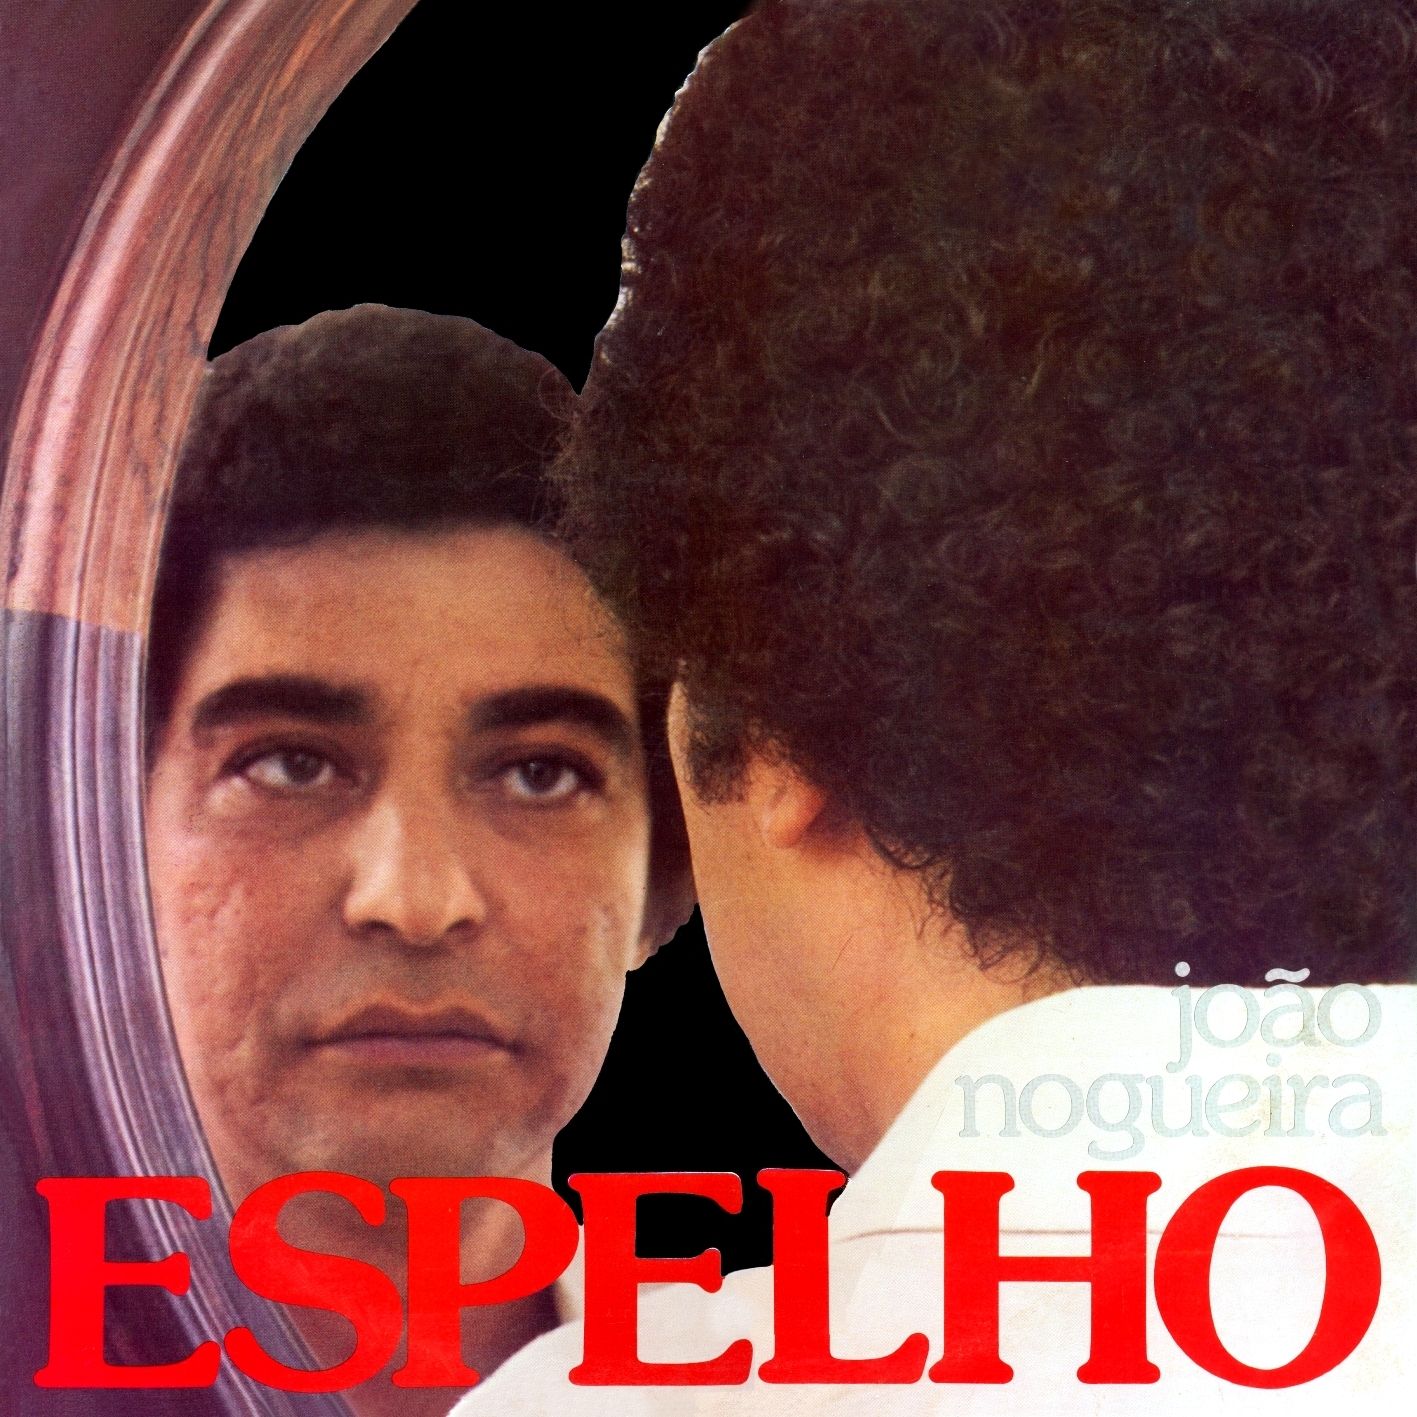 Espelho | Discografia de João Nogueira - LETRAS.MUS.BR